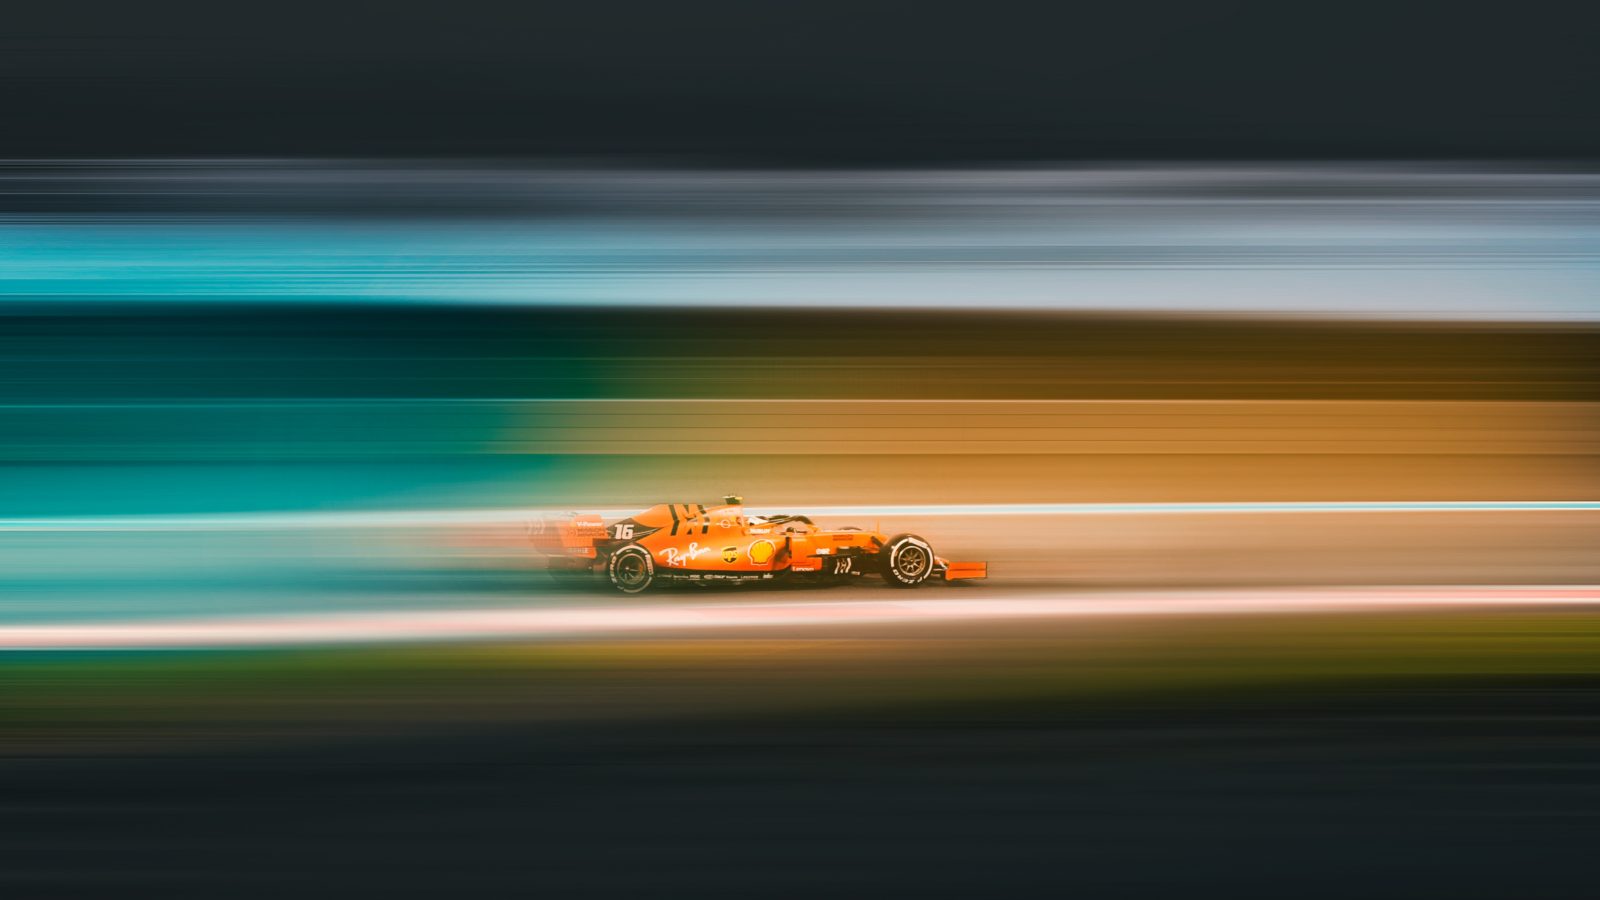  2022/05/Formula-1.jpg 